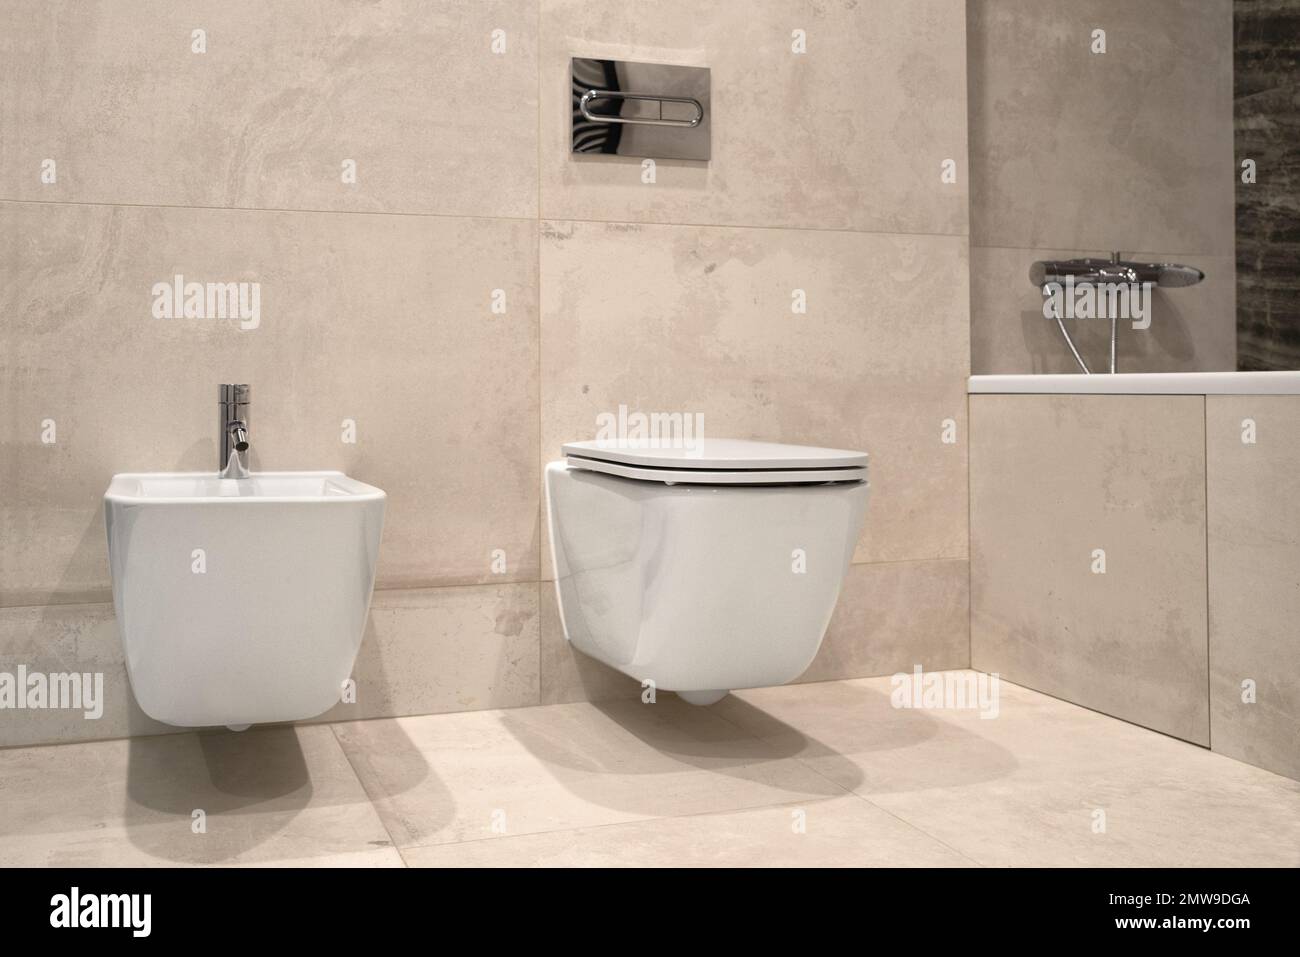 bidet et toilettes muraux blancs, carrelage en céramique grise dans la salle de bains. Espace de vie minimaliste en gros plan Banque D'Images